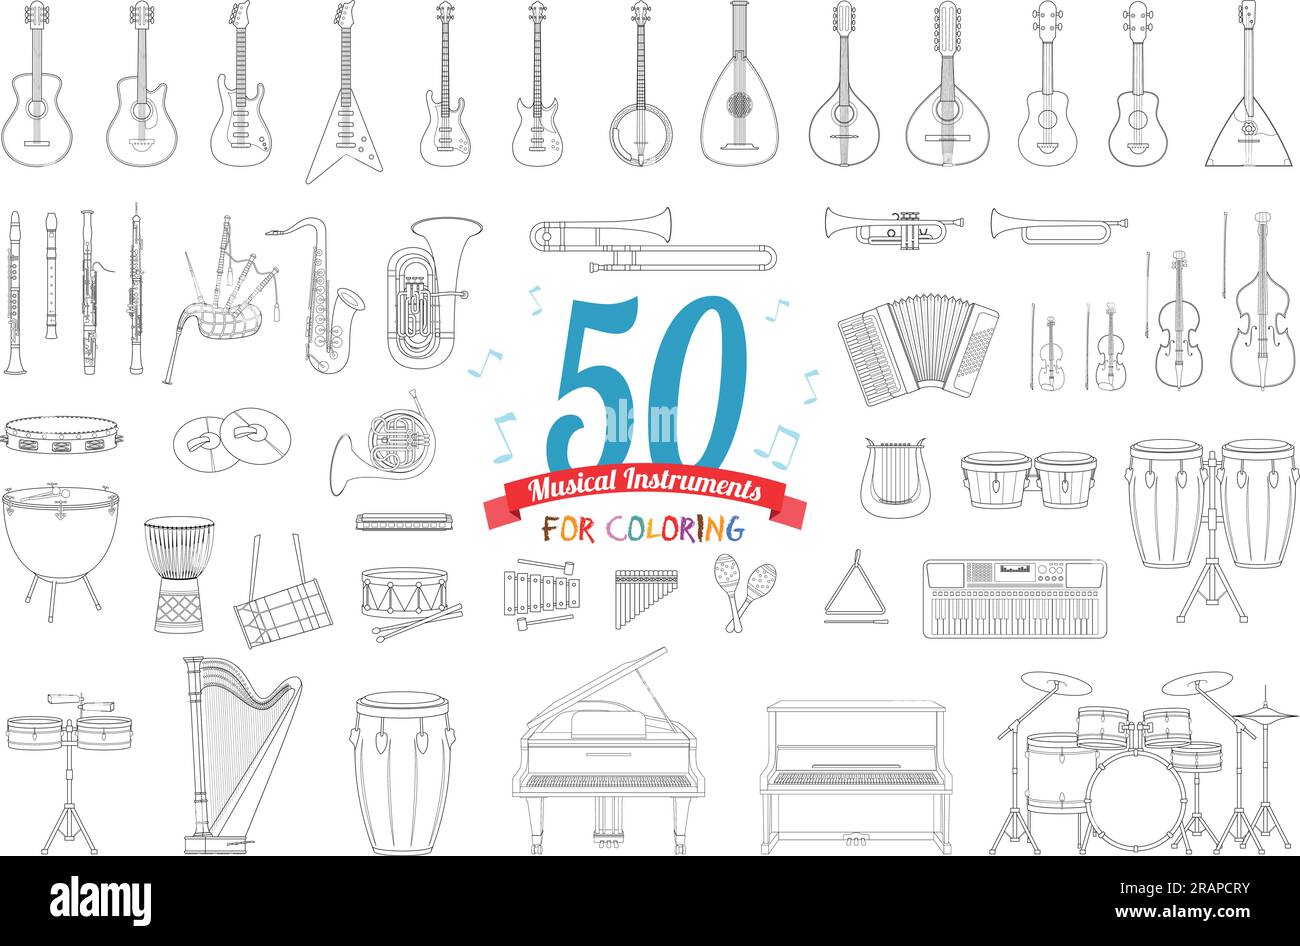 Ensemble d'illustration vectorielle de 50 instruments de musique pour la coloration dans le style de bande dessinée isolé sur fond blanc Illustration de Vecteur